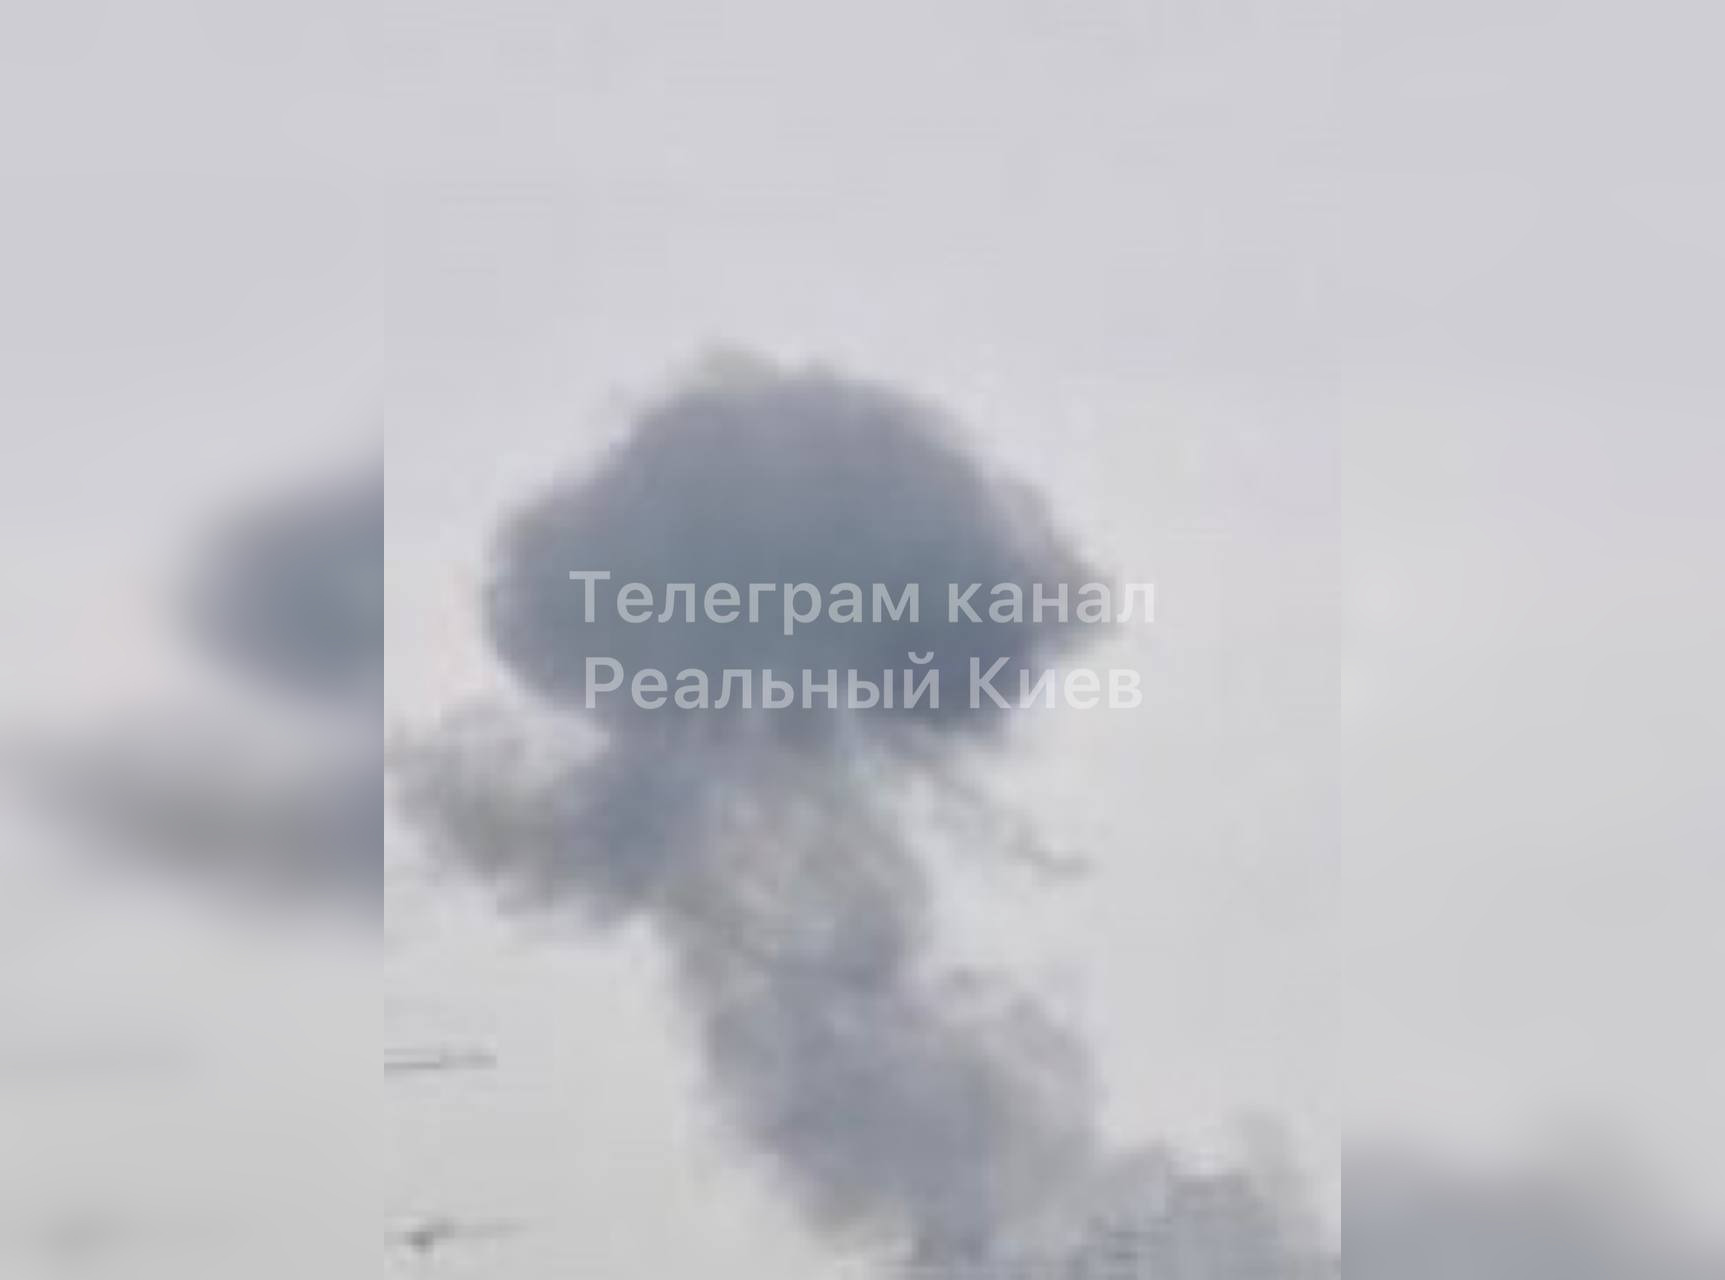 Первые секунды после взрыва. Фото © Telegram-канал Реальный Киев